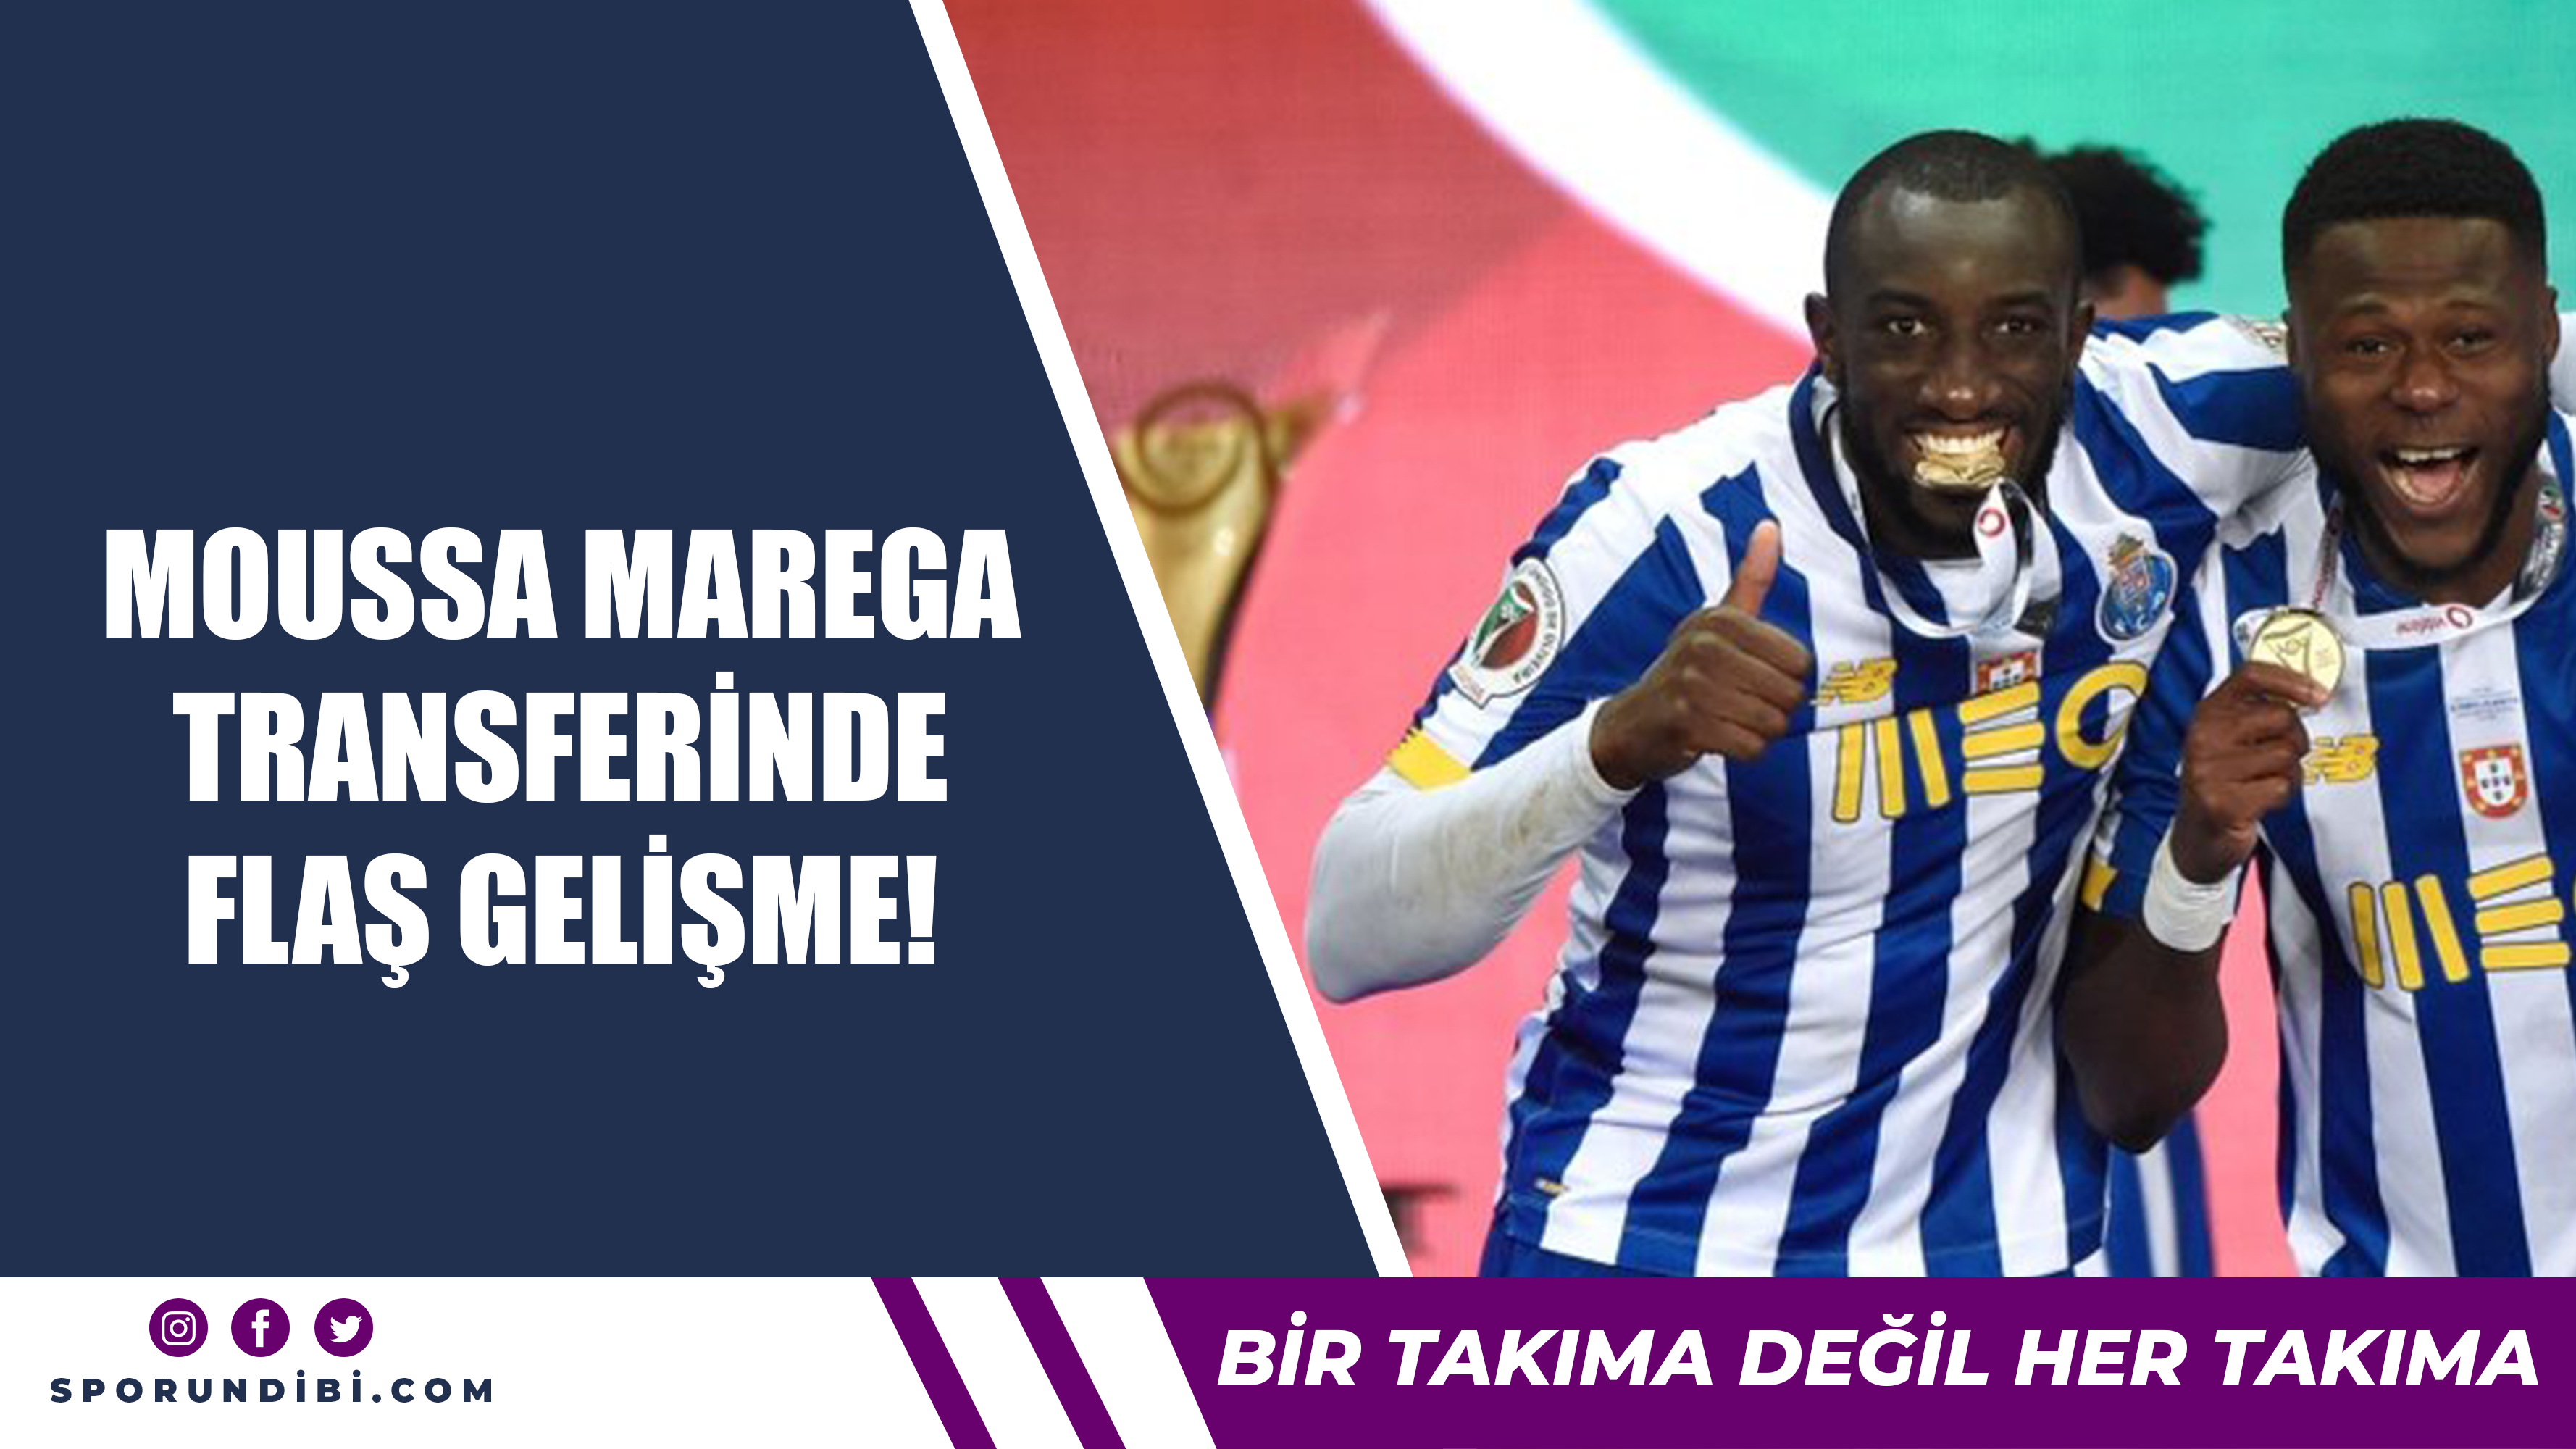 Moussa Marega transferinde flaş gelişme!